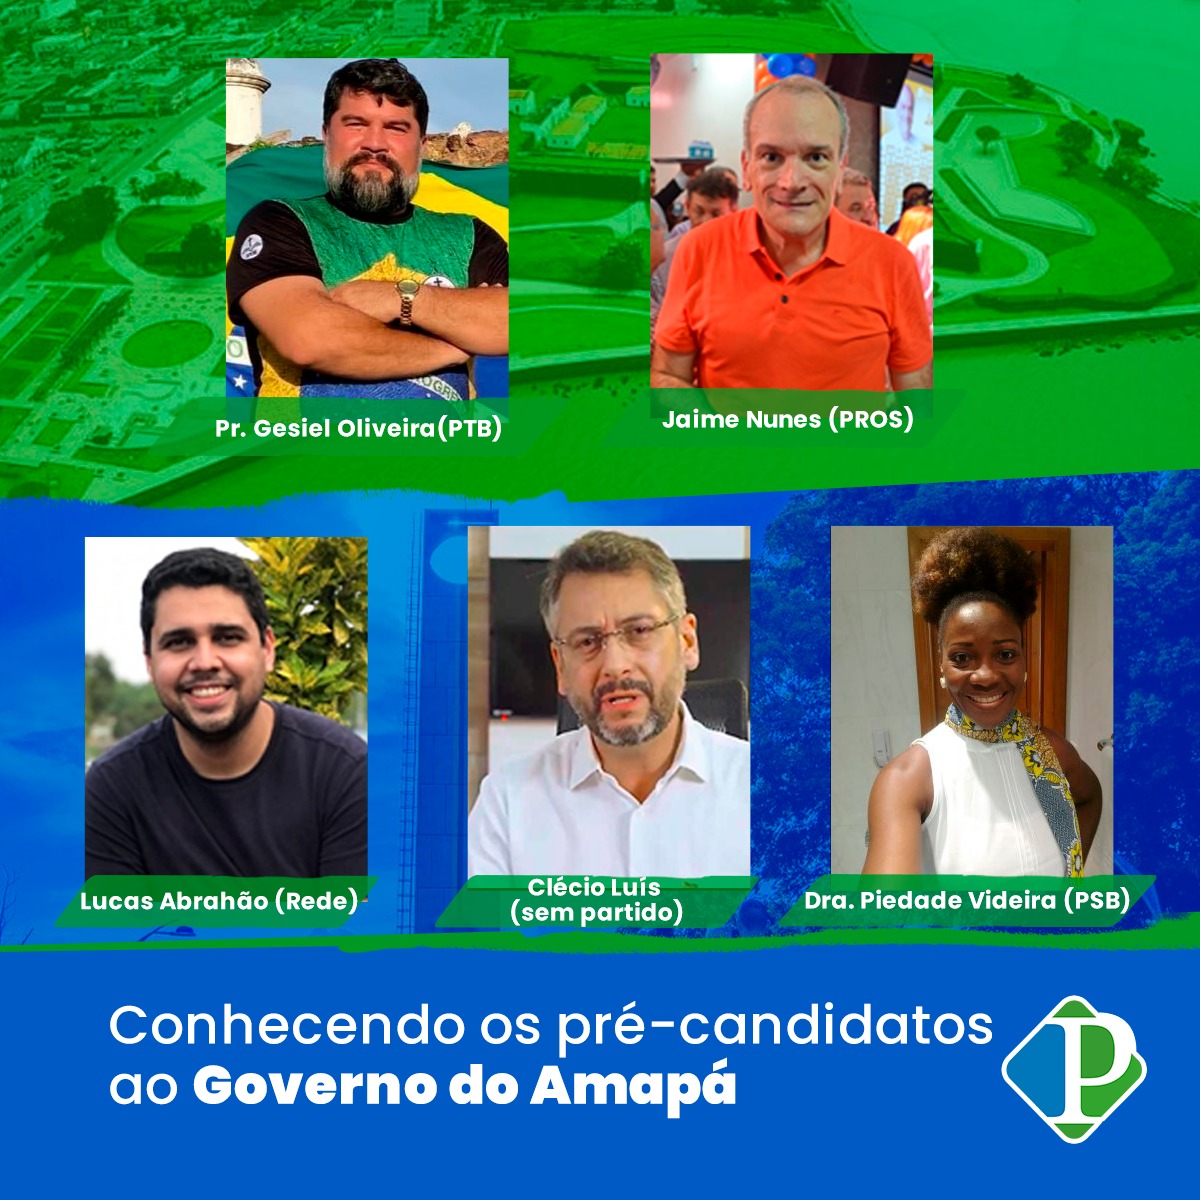 Conhecendo os pré-candidatos ao Governo do Estado do Amapá